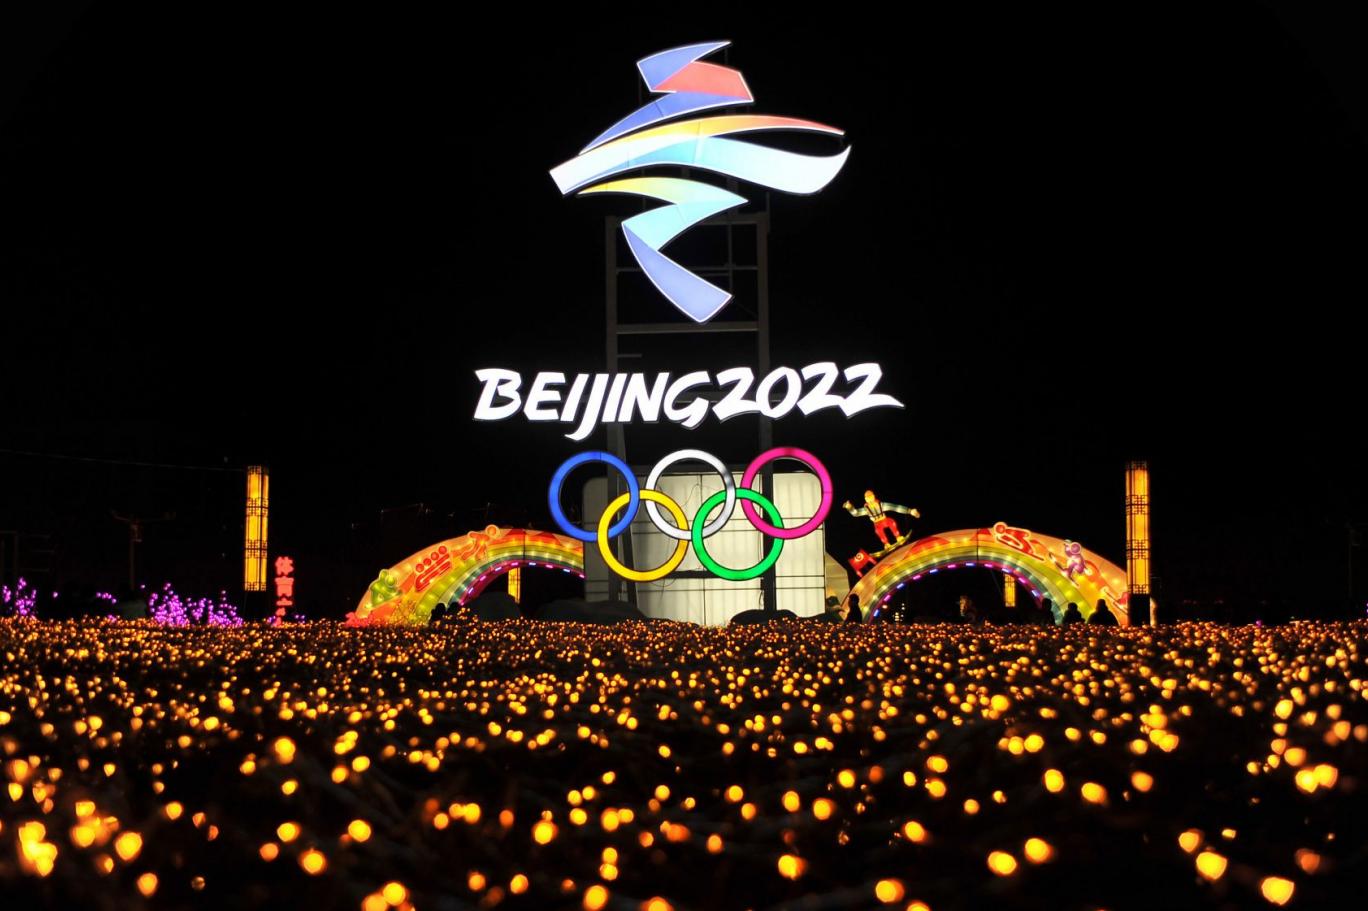 2022 Pekin Kış Olimpiyatları'nın 4-20 Şubat arasında yapılması planlan...